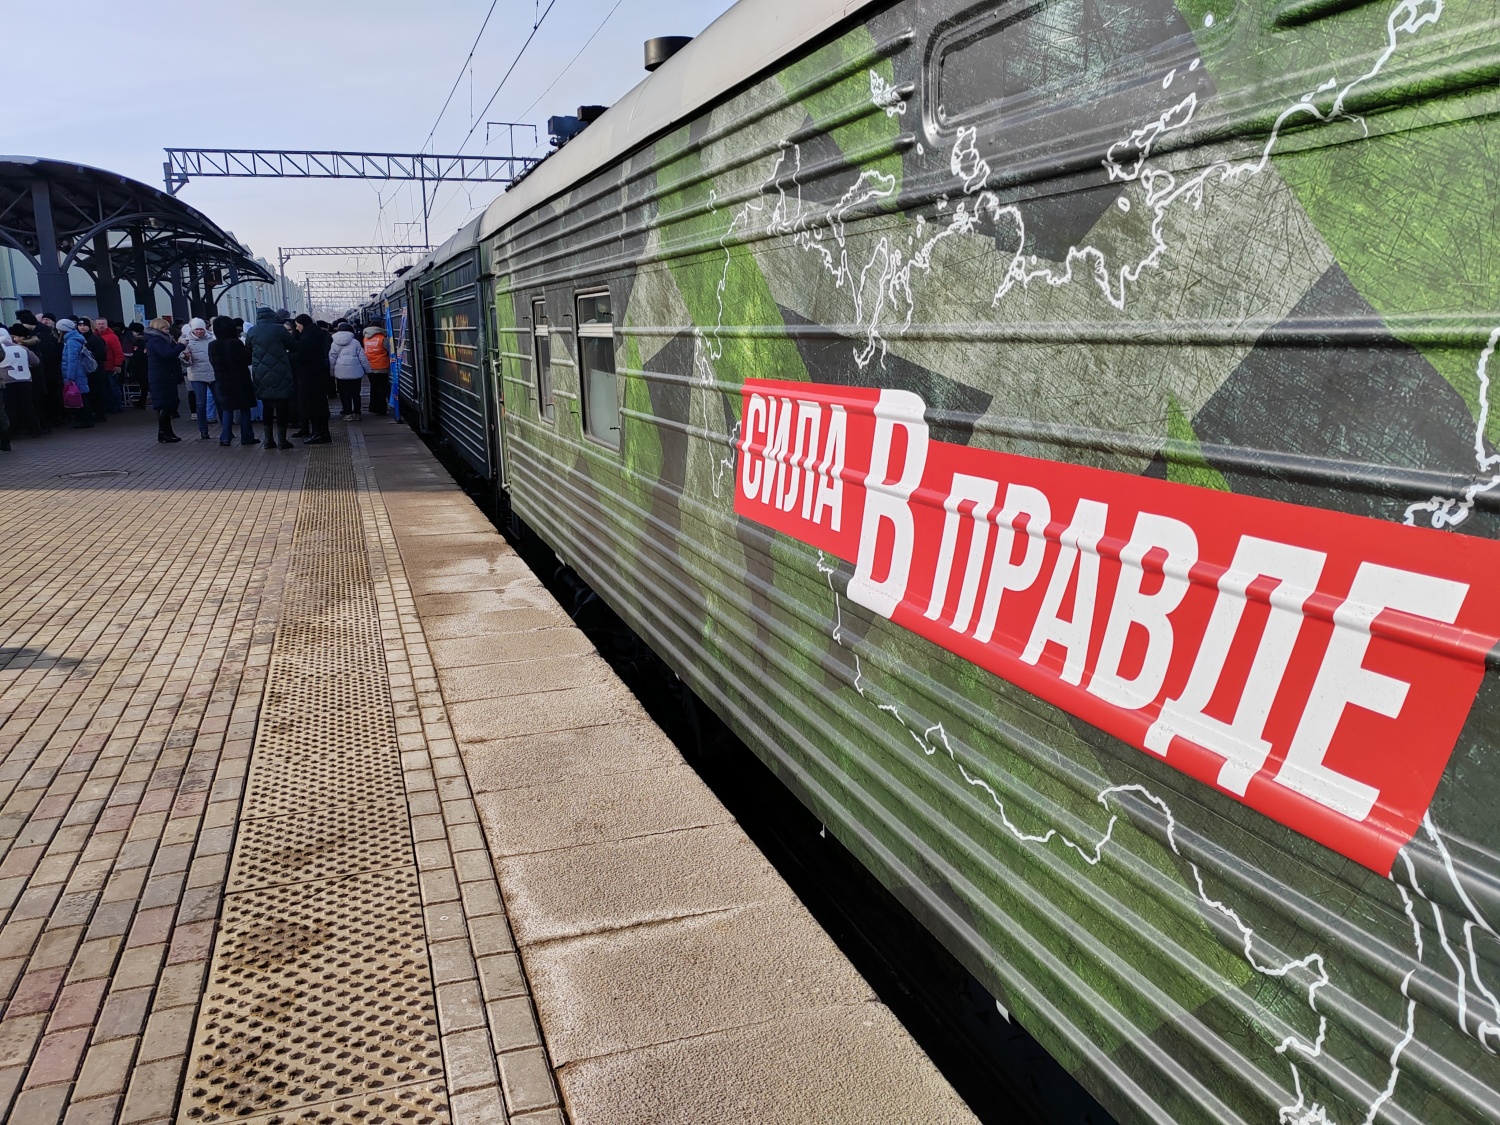 14 марта в Пензу приедет поезд «Сила в правде»